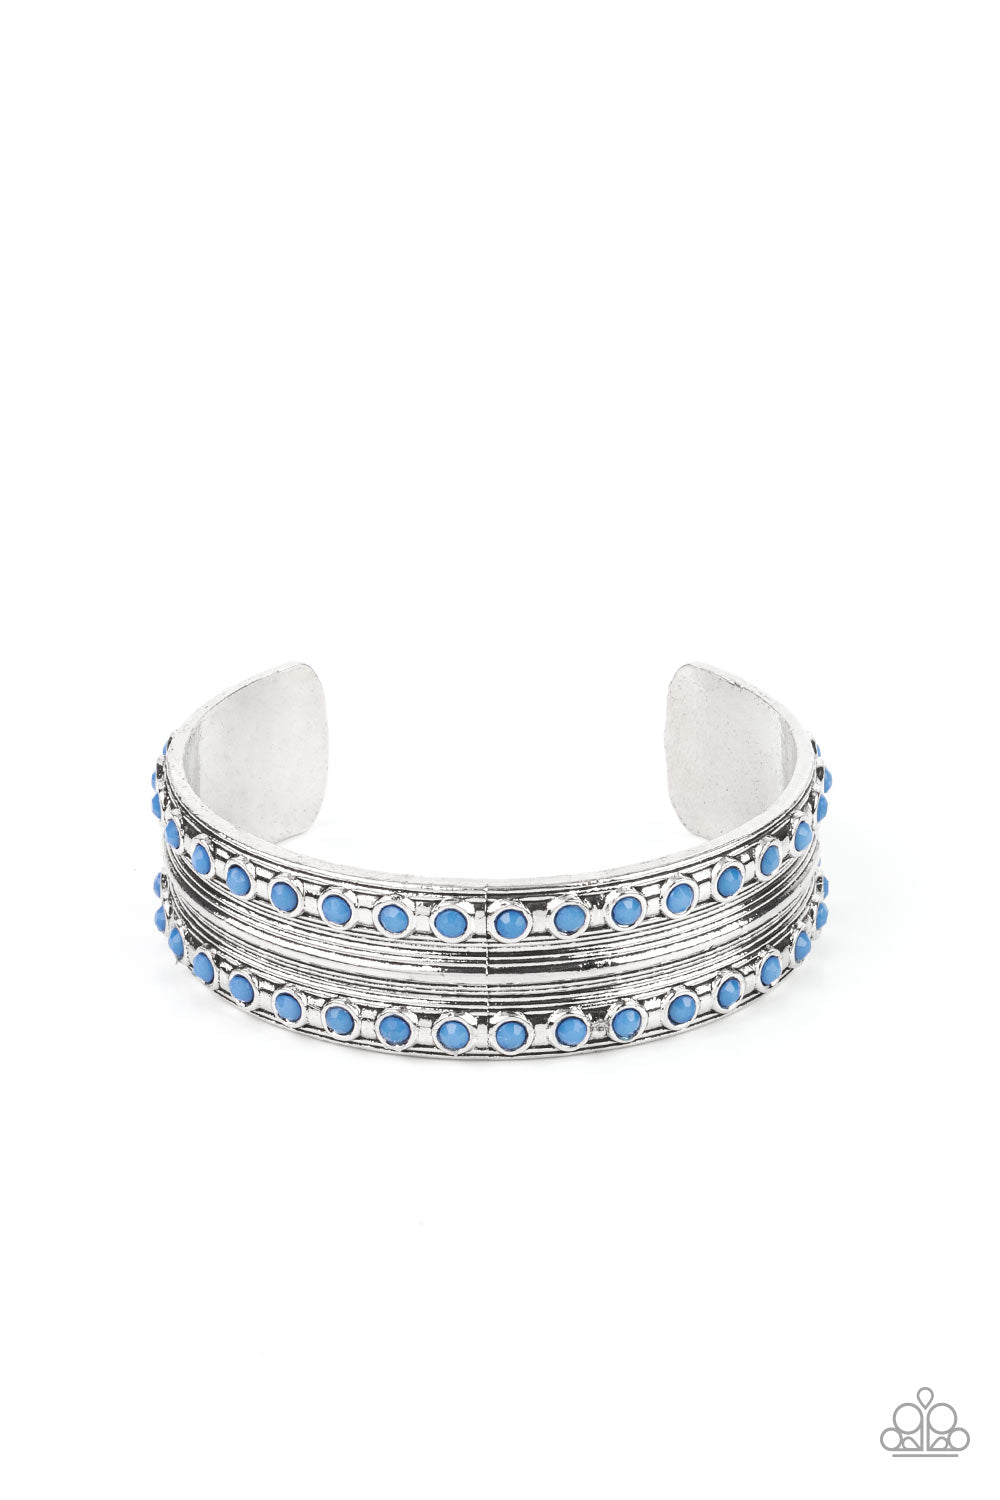 Costa Rica Retreat Blue & Silver Cuff Bracelet - Paparazzi Accessories- lightbox - CarasShop.com - $5 Jewelry by Cara Jewels